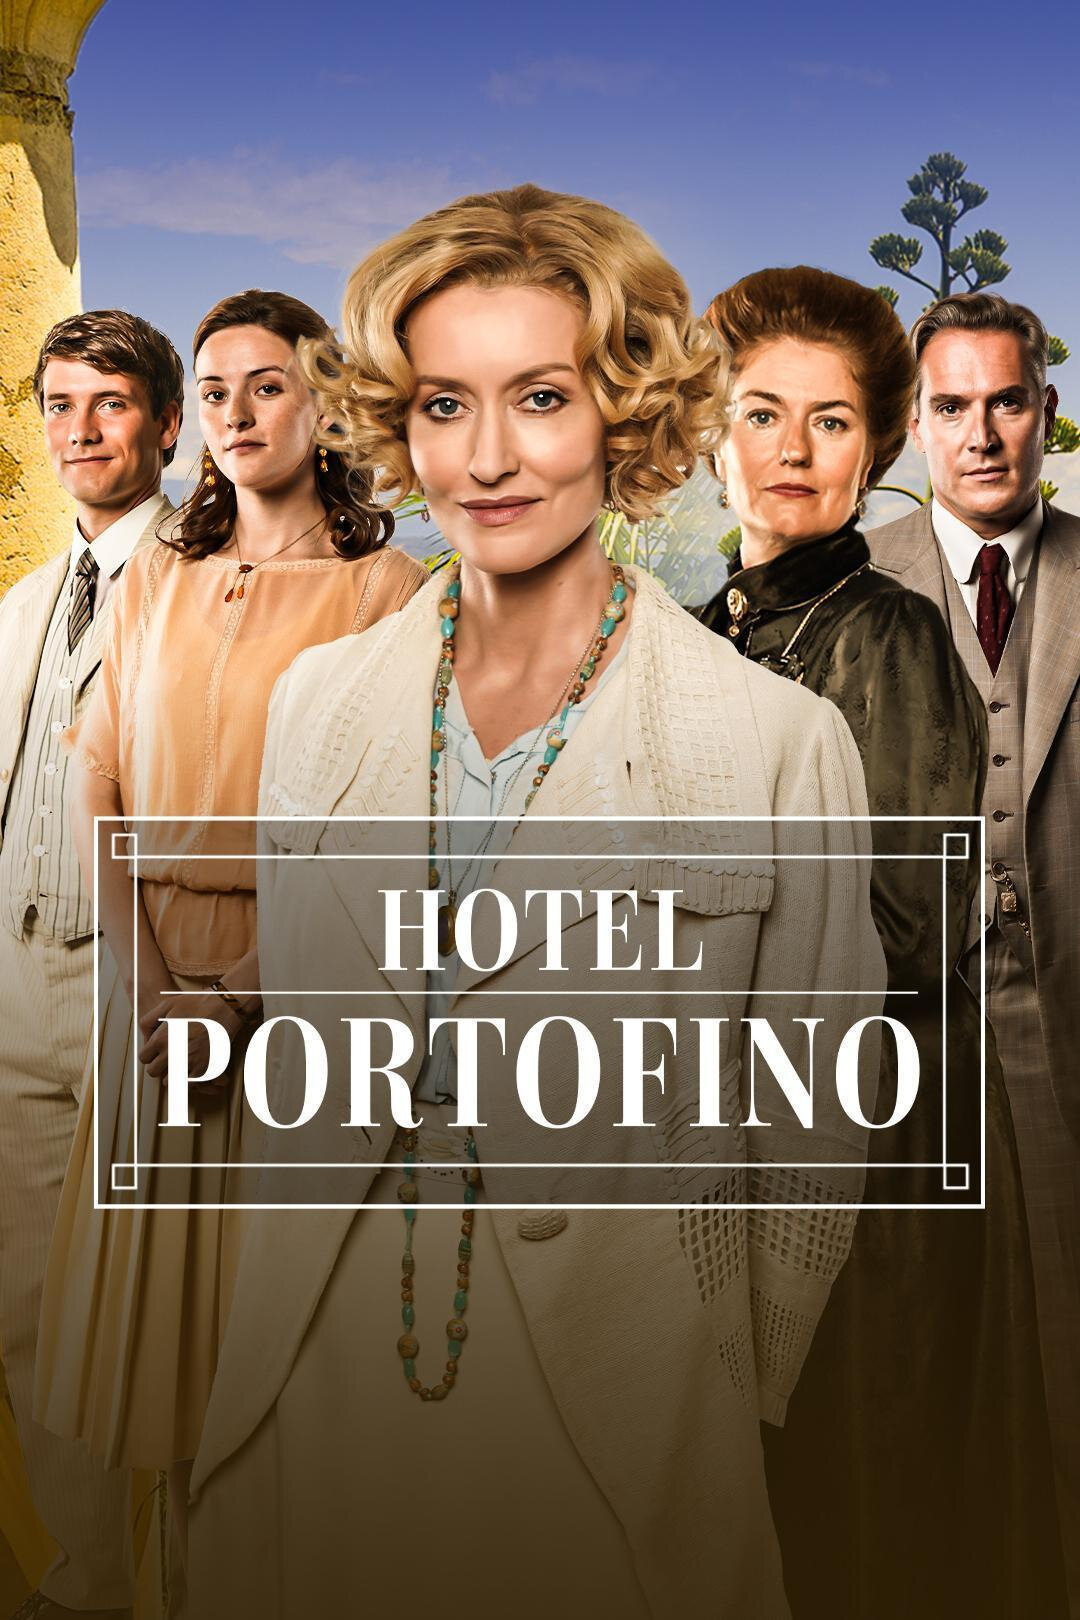 Hotel Portofino ne zaman